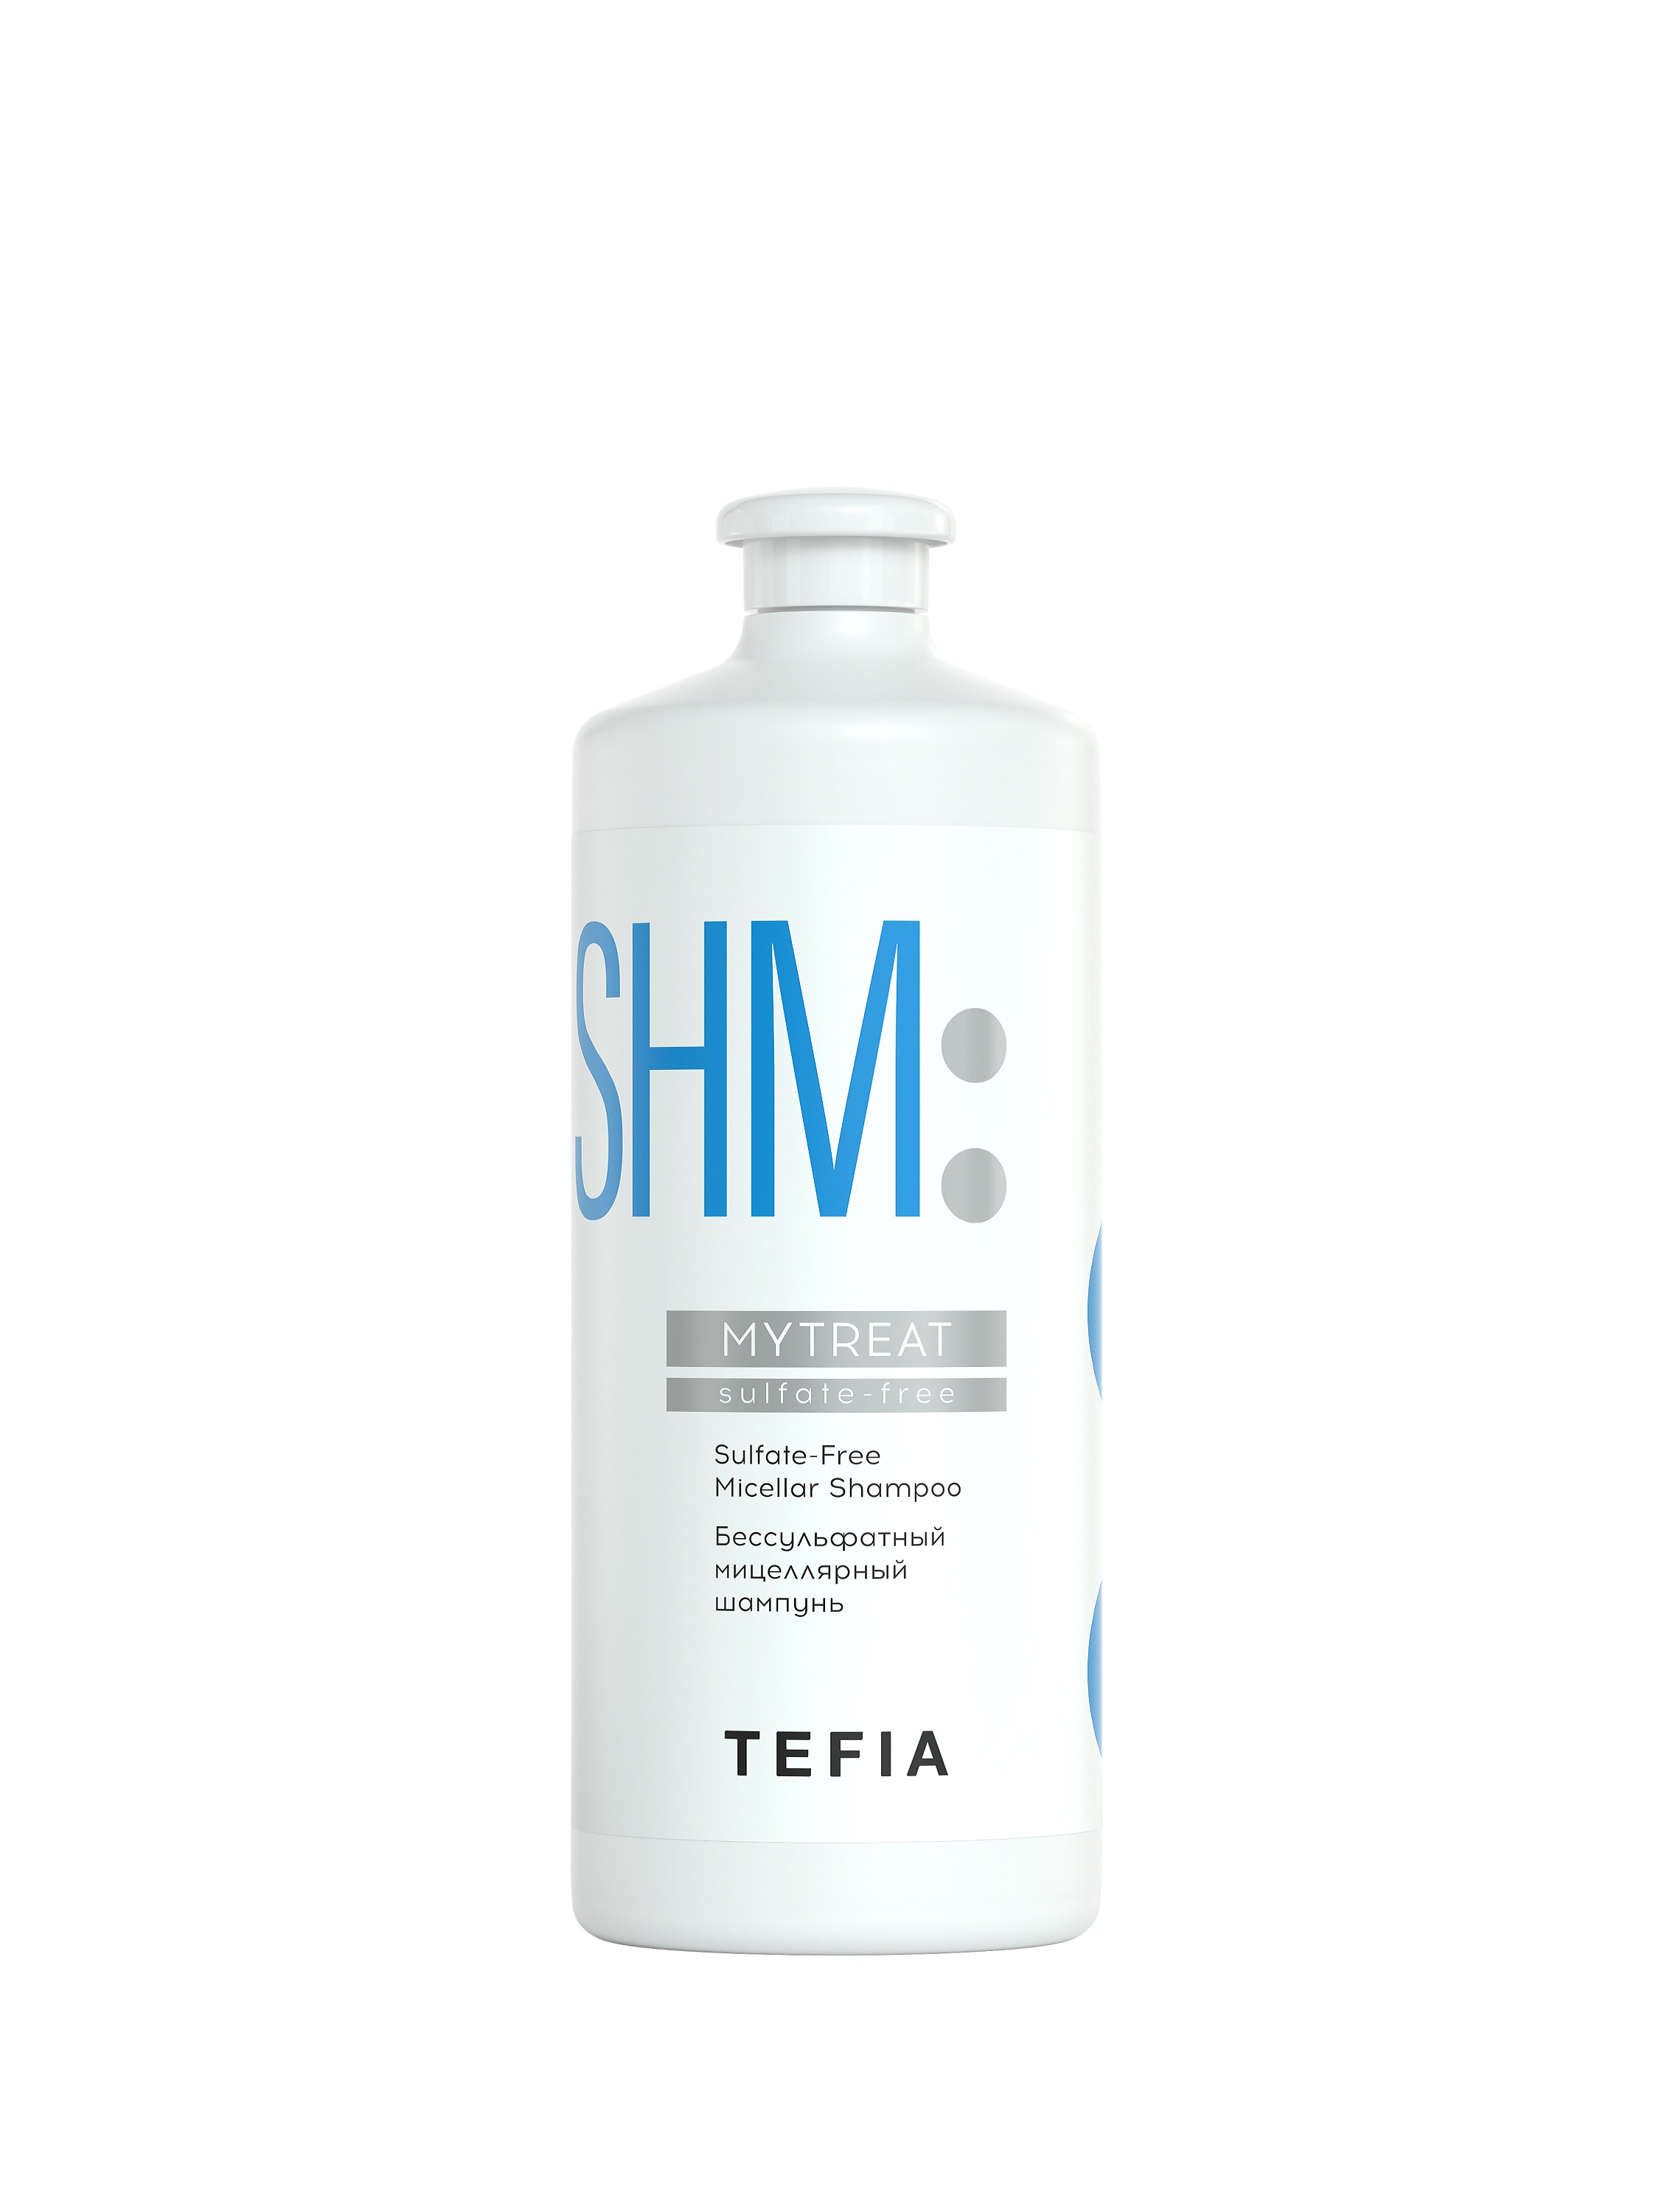 Купить Шампунь TEFIA бессульфатный мицеллярный для волос профессиональный 1000мл, Линия MYTREAT, Sulfate-Free Micellar Shampoo, 1000